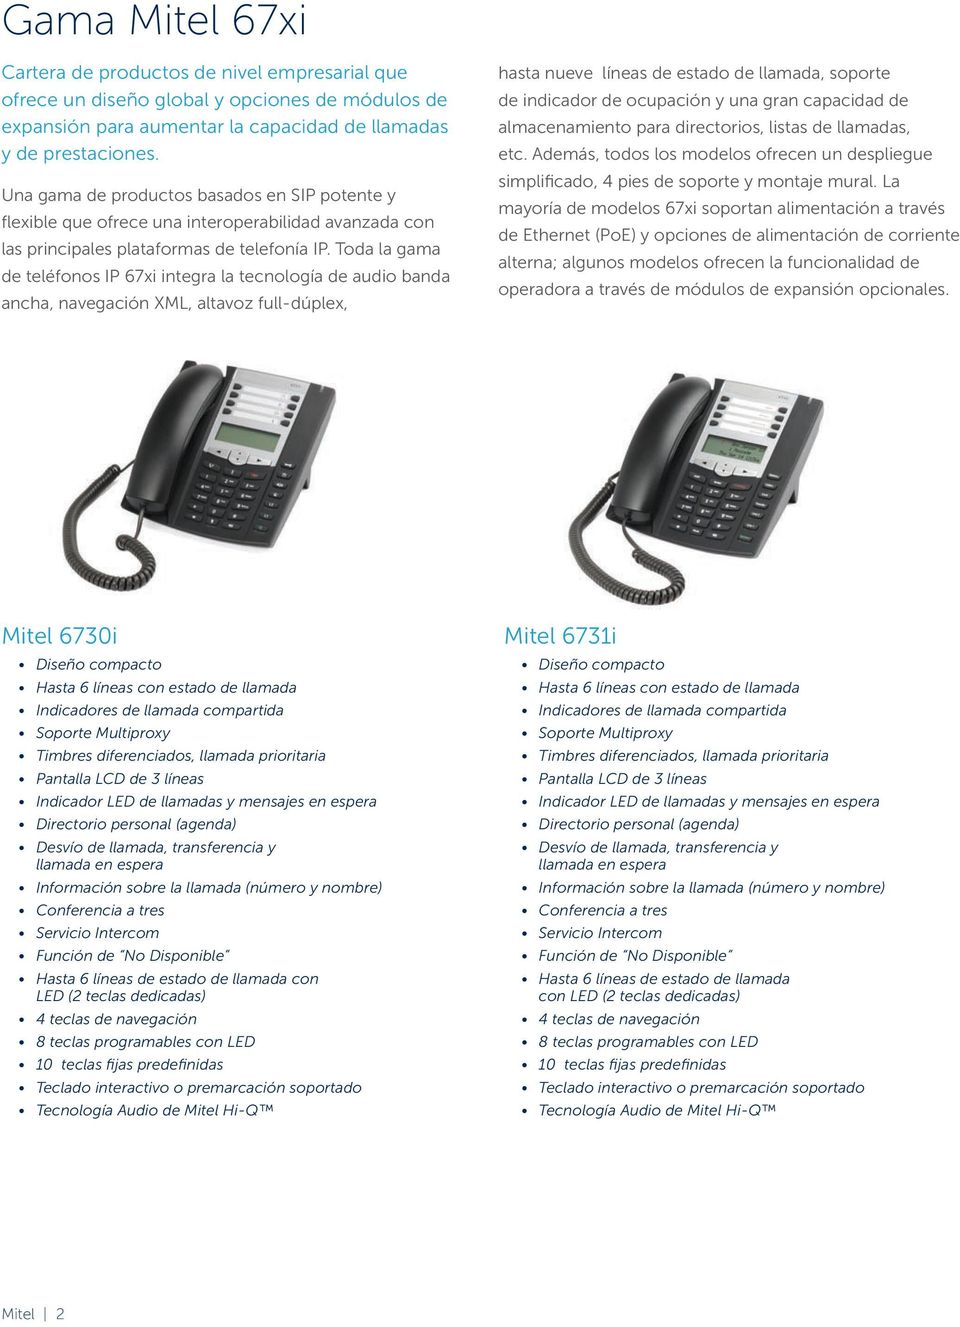 Toda la gama de teléfonos IP 67xi integra la tecnología de audio banda ancha, navegación XML, altavoz full-dúplex, hasta nueve líneas de estado de llamada, soporte de indicador de ocupación y una